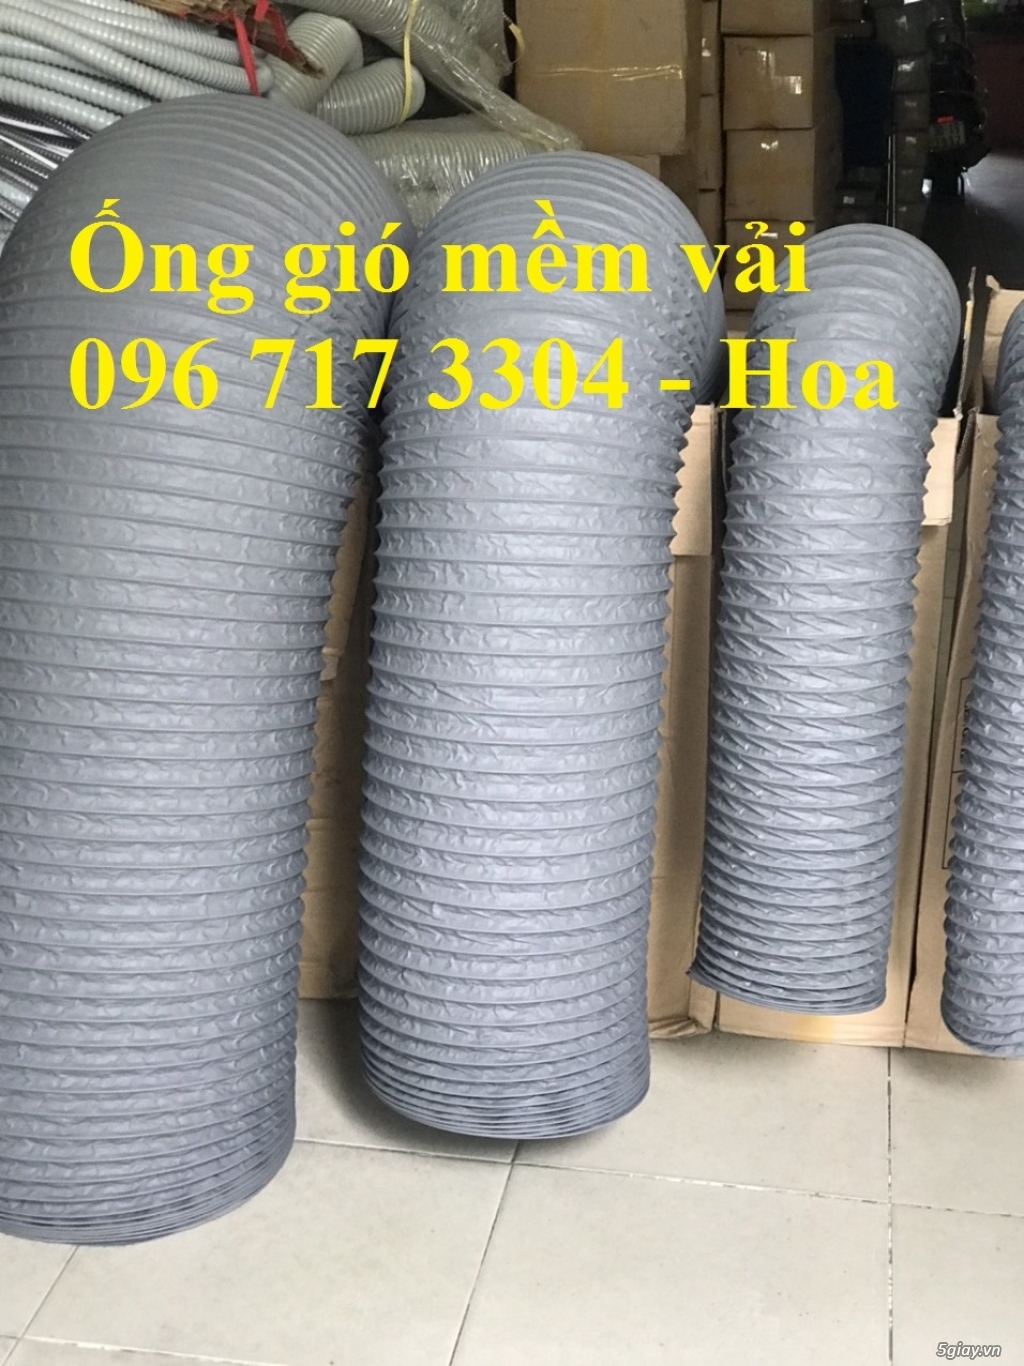 Ống gió mềm vải Hàn Quốc D250 chính hãng giá rẻ - 096 717 3304 - 2